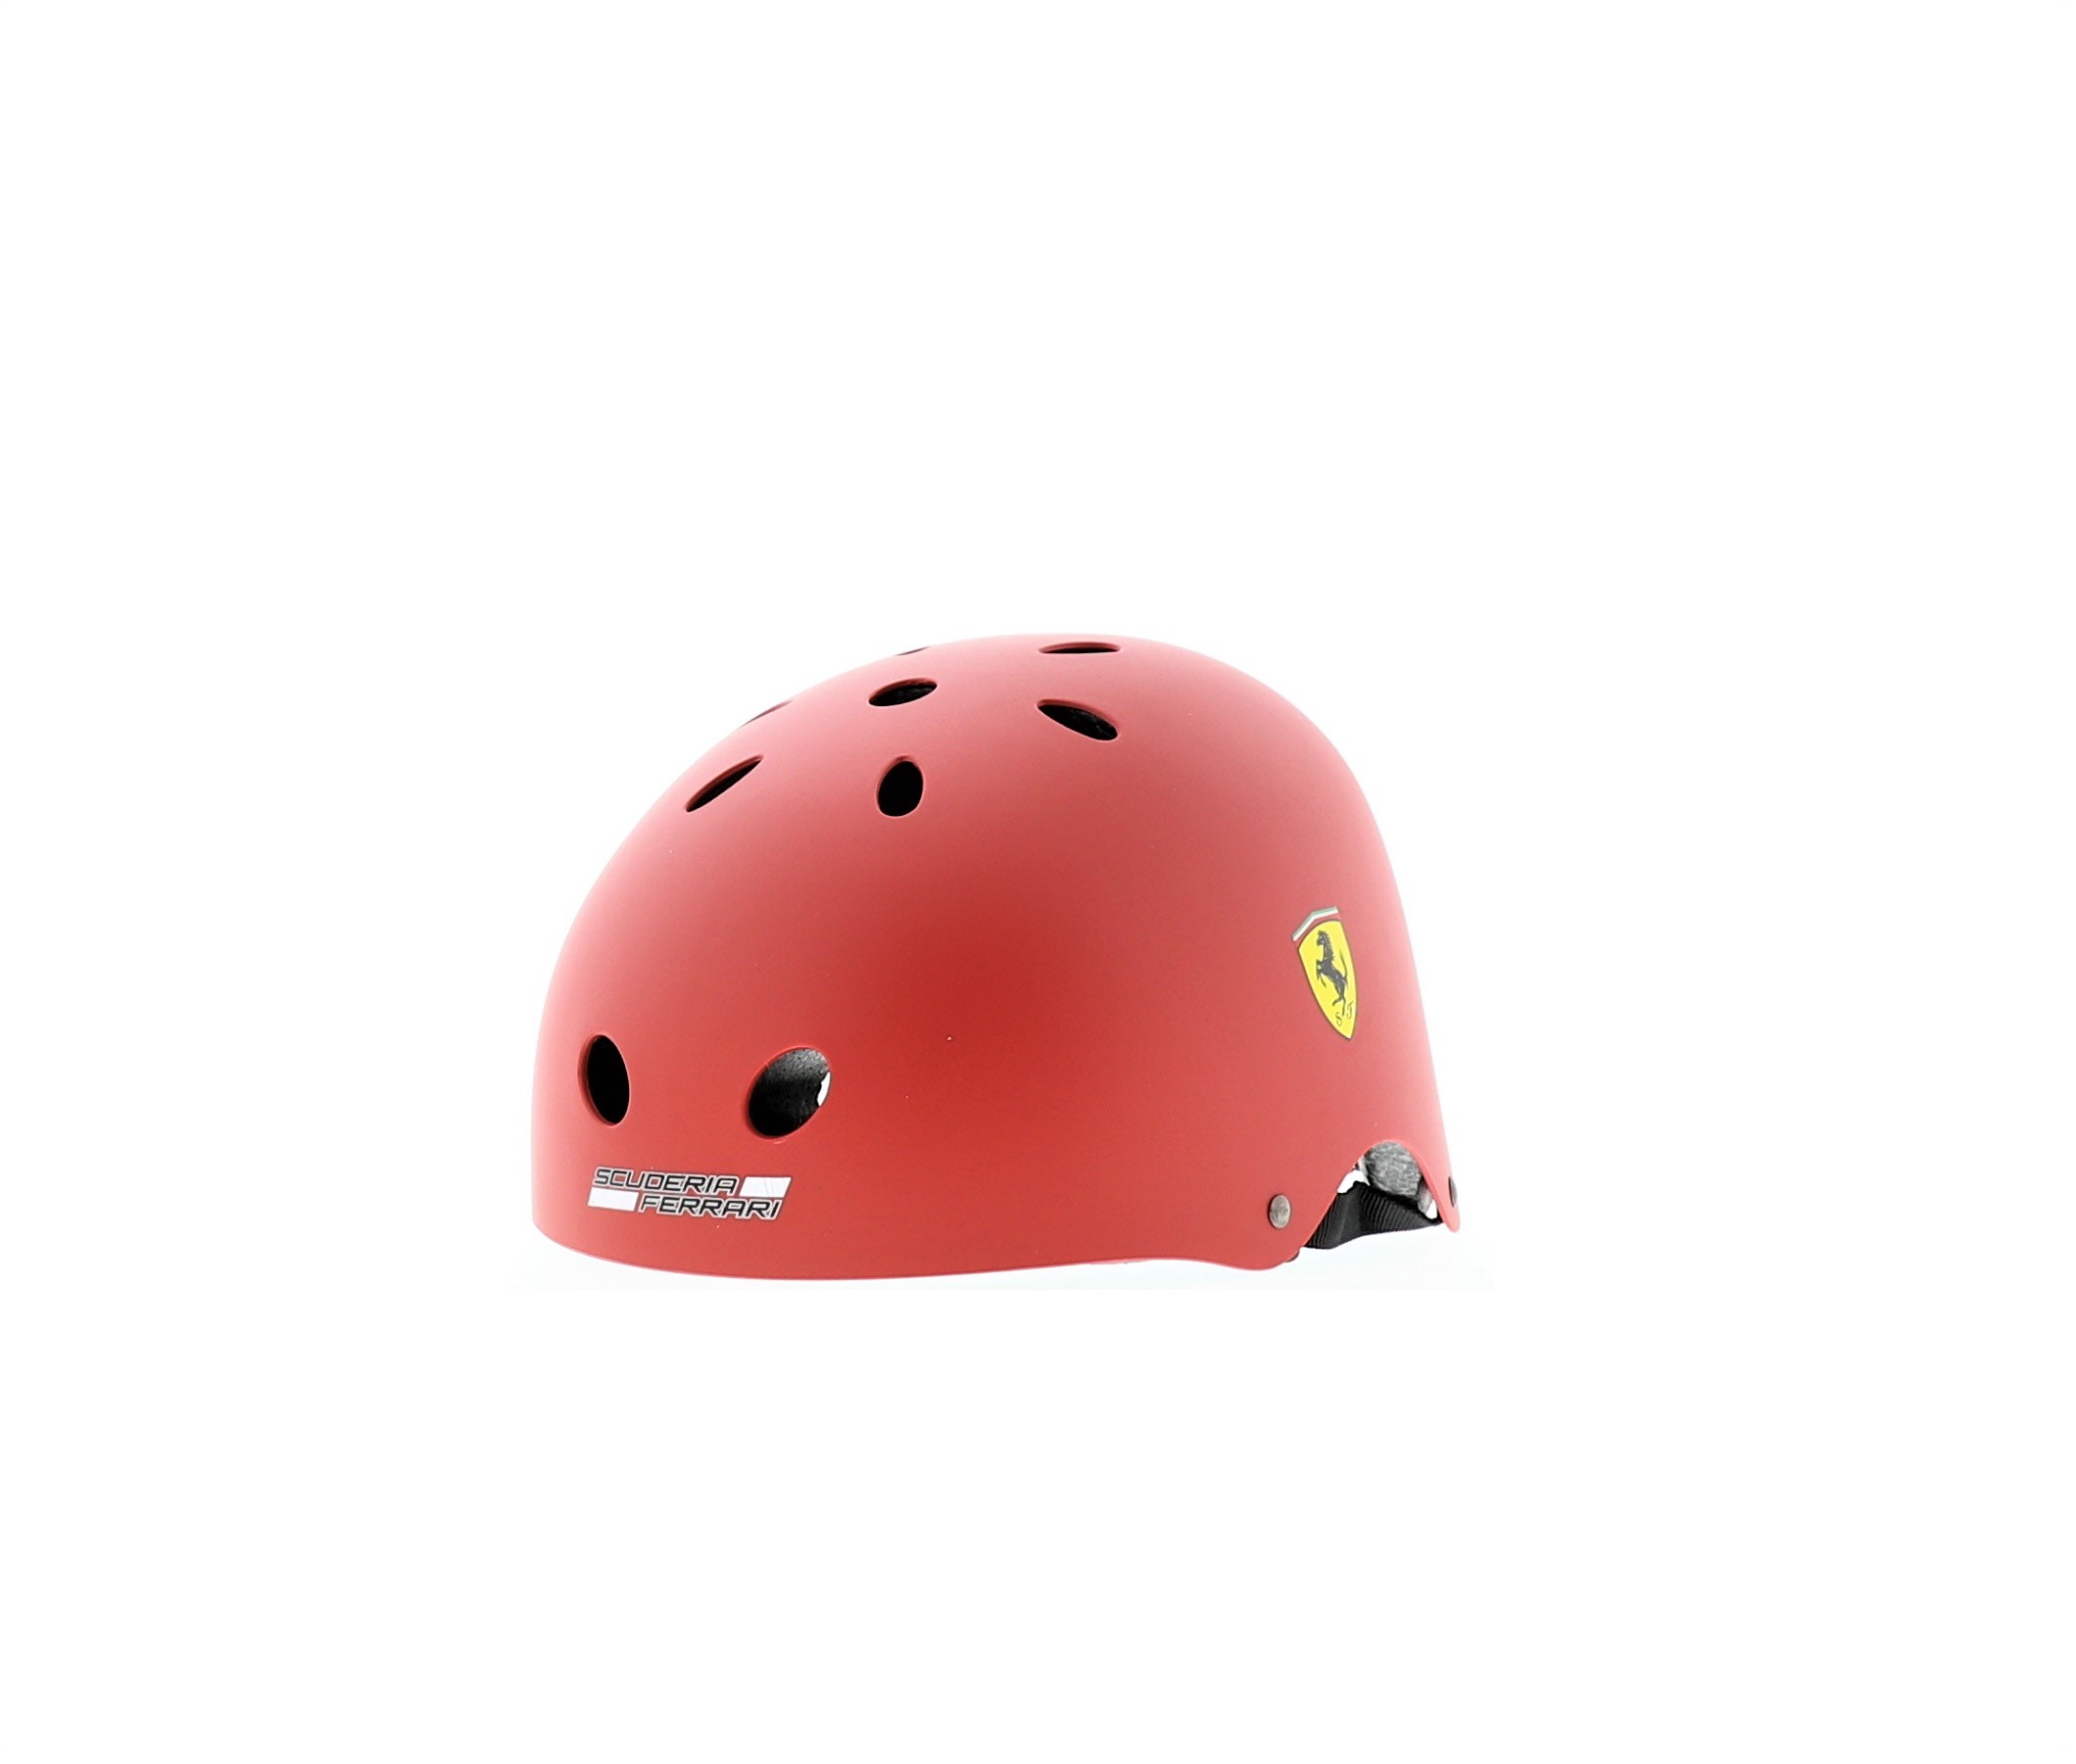 Ferrari Helmet With Adjustor